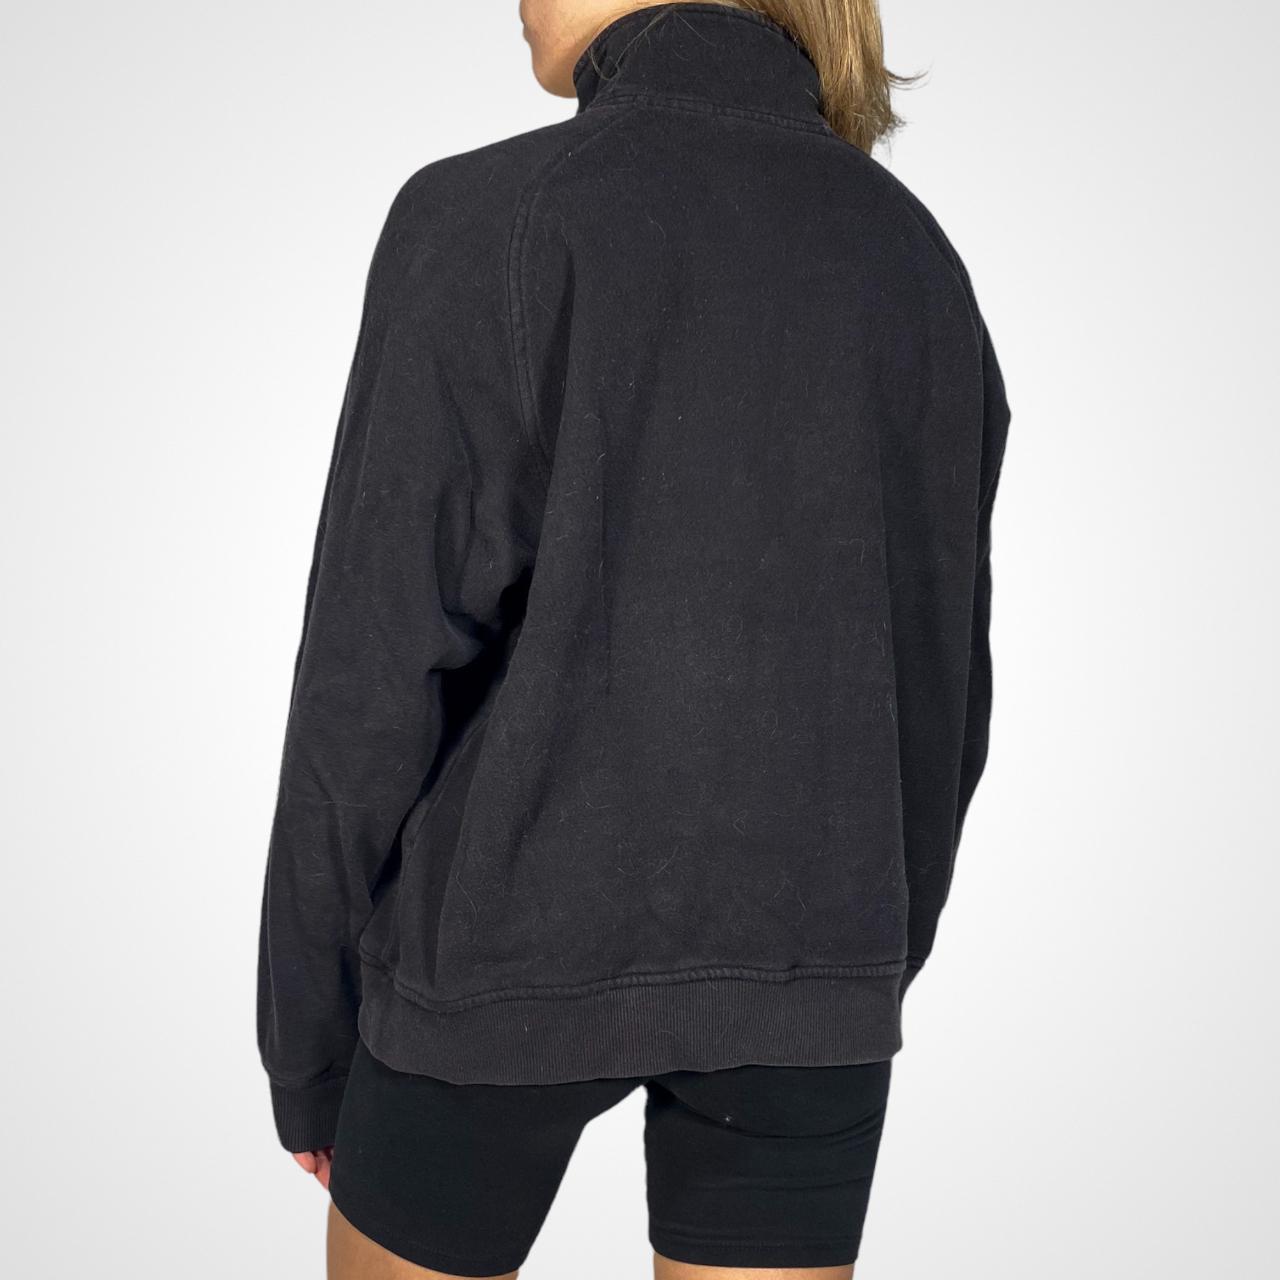 Sporty Fila half zip pull over sweatshirt, size... - Depop